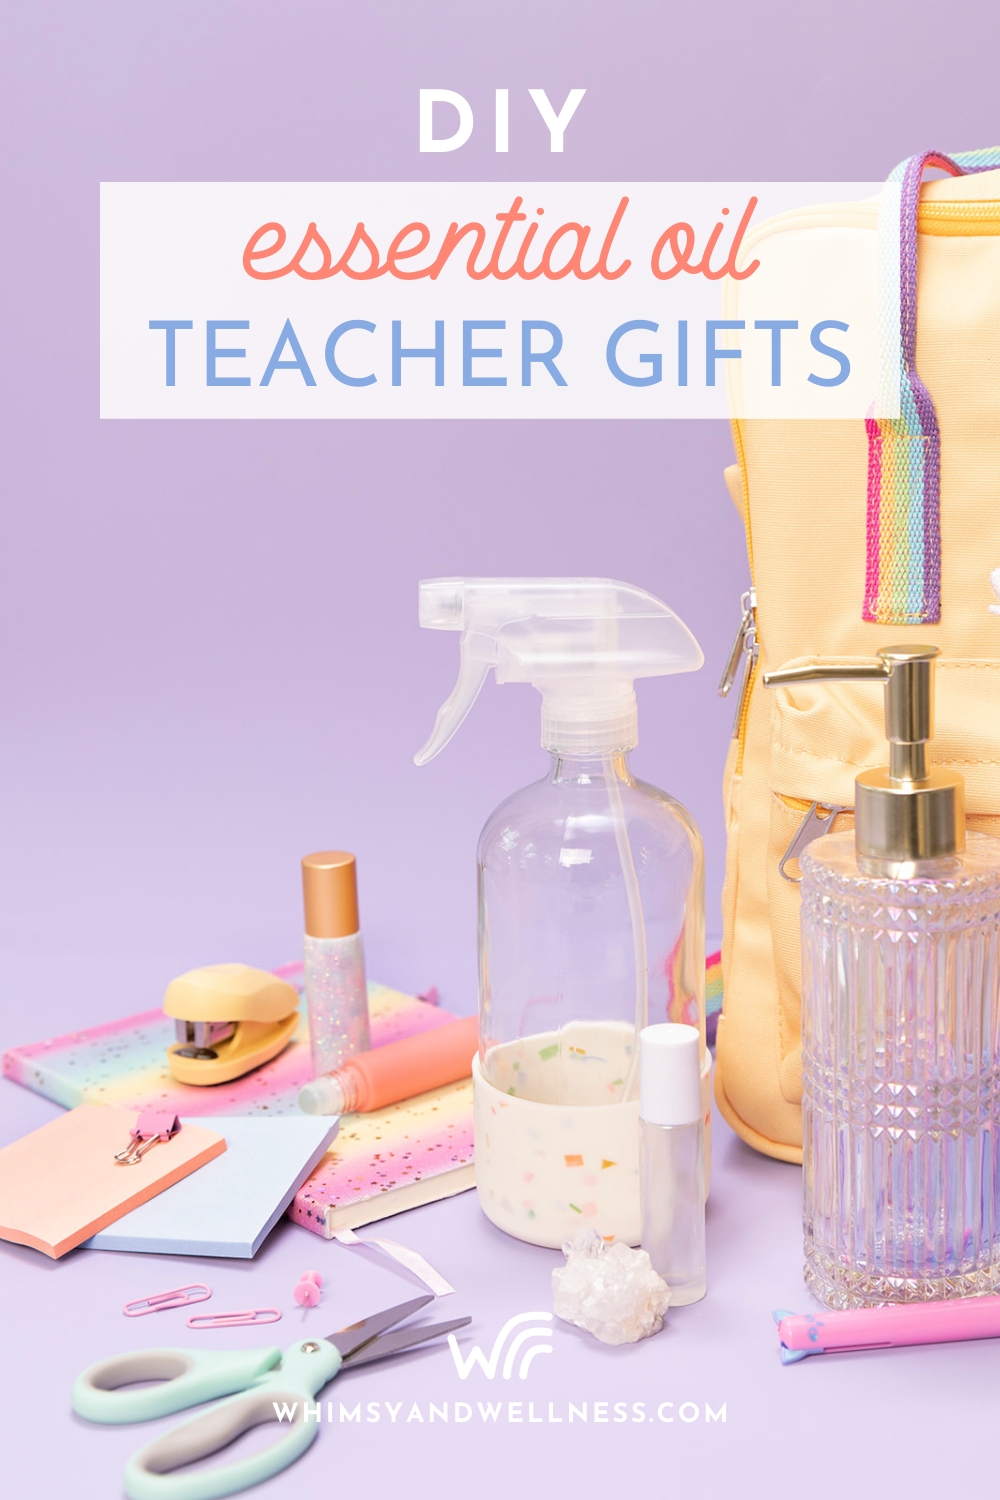 https://blog.whimsyandwellness.com/wp-content/uploads/2021/07/DIY-Teacher-Gifts-1.png